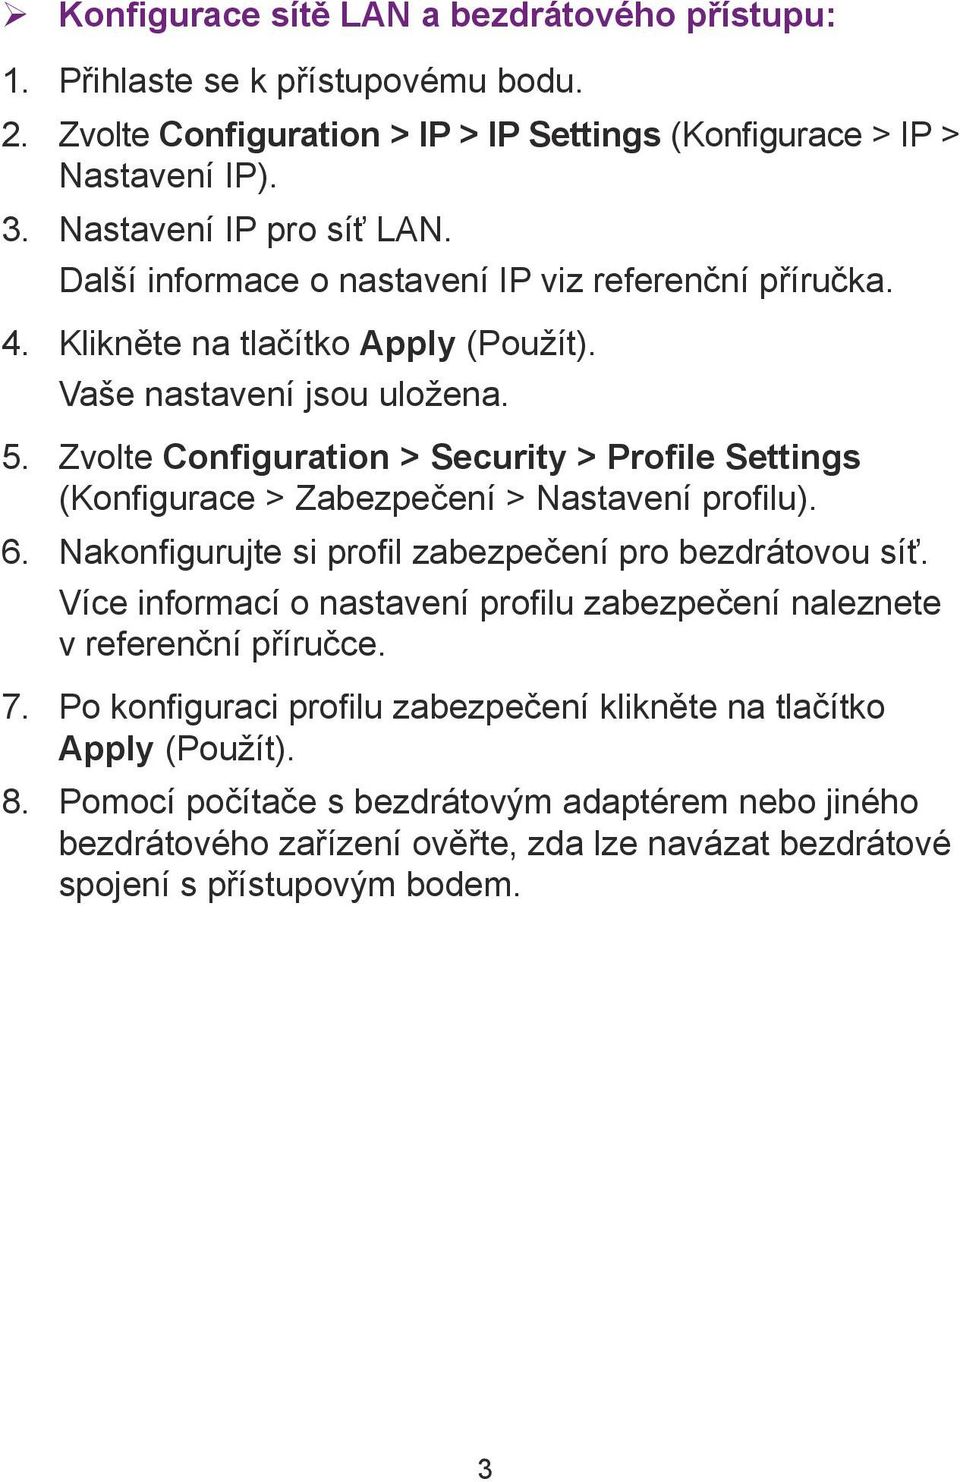 Zvolte Configuration > Security > Profile Settings (Konfigurace > Zabezpečení > Nastavení profilu). 6. Nakonfigurujte si profil zabezpečení pro bezdrátovou síť.